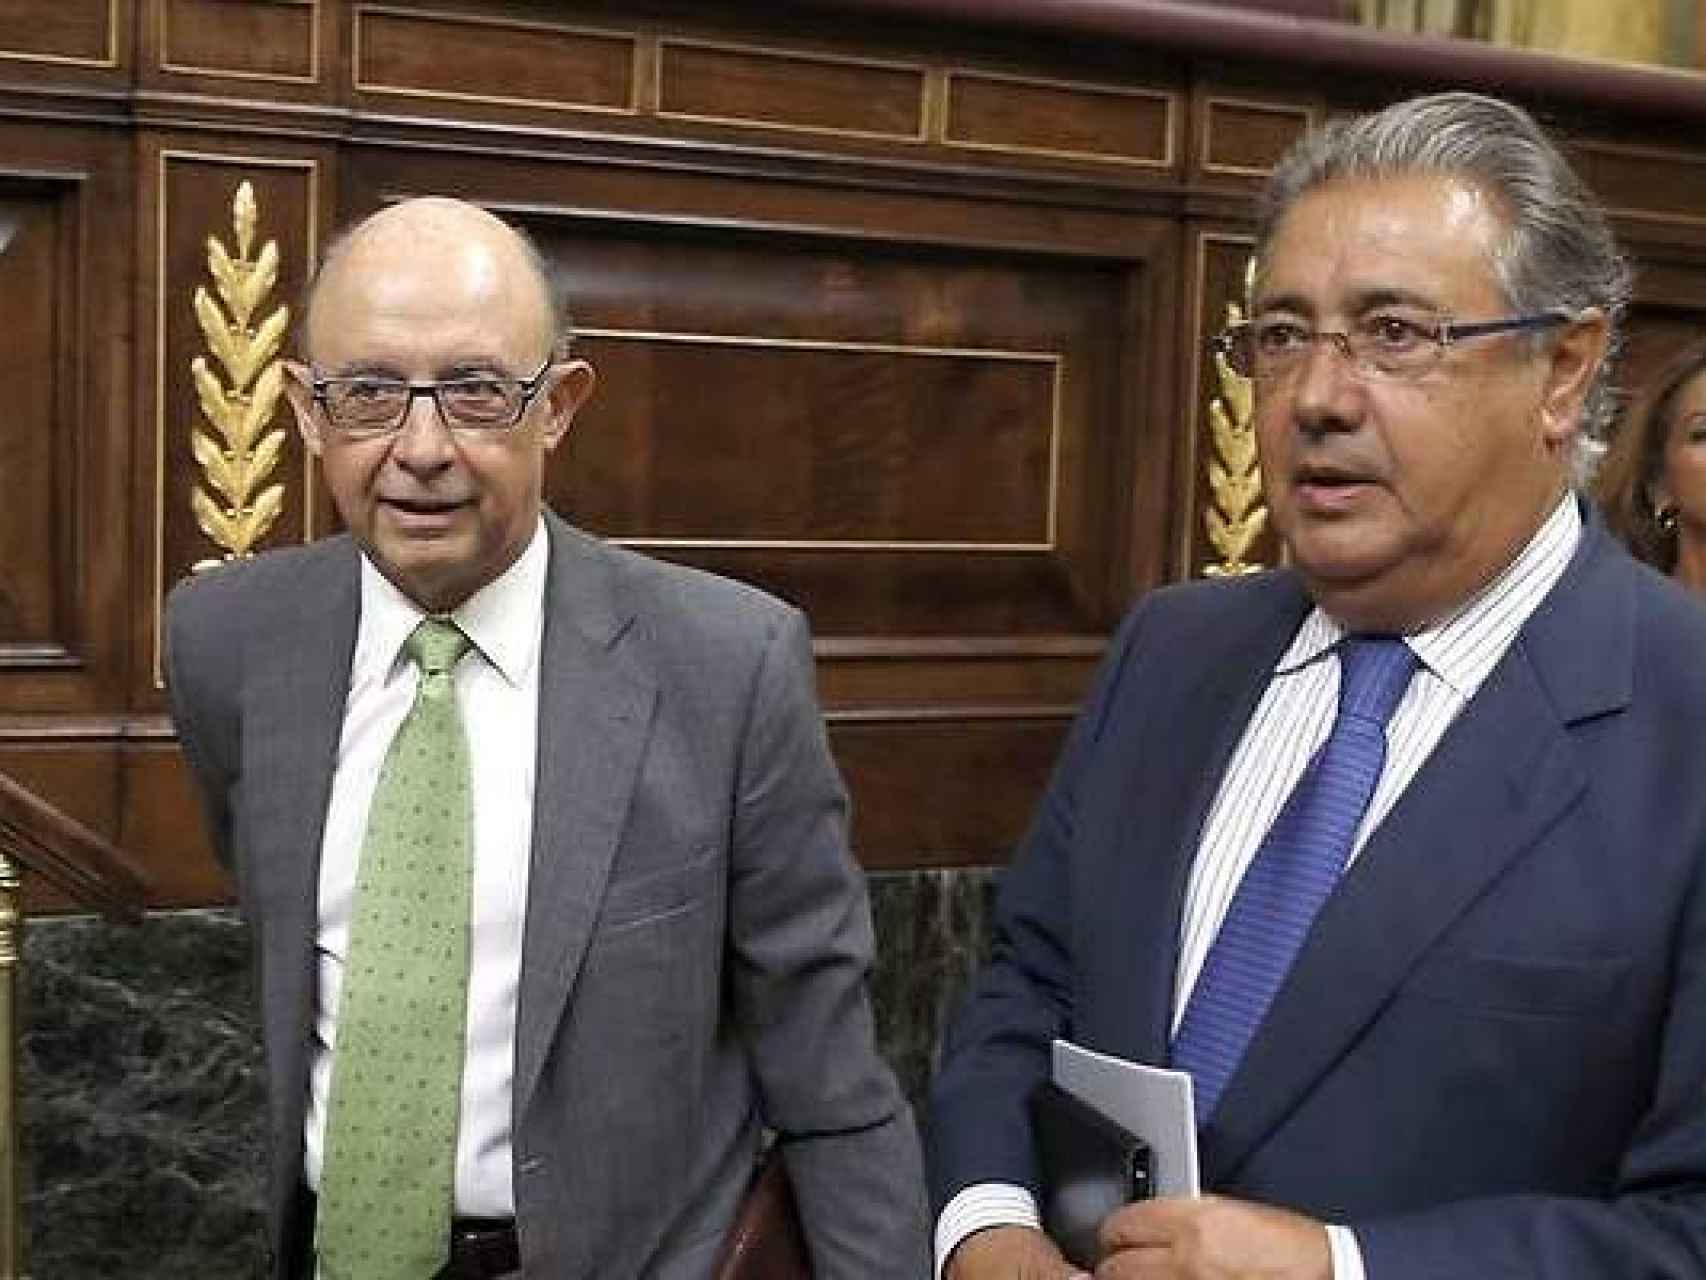 Cristóbal Montoro y Juan Ignacio Zoido, los ministros insultados este miércoles.